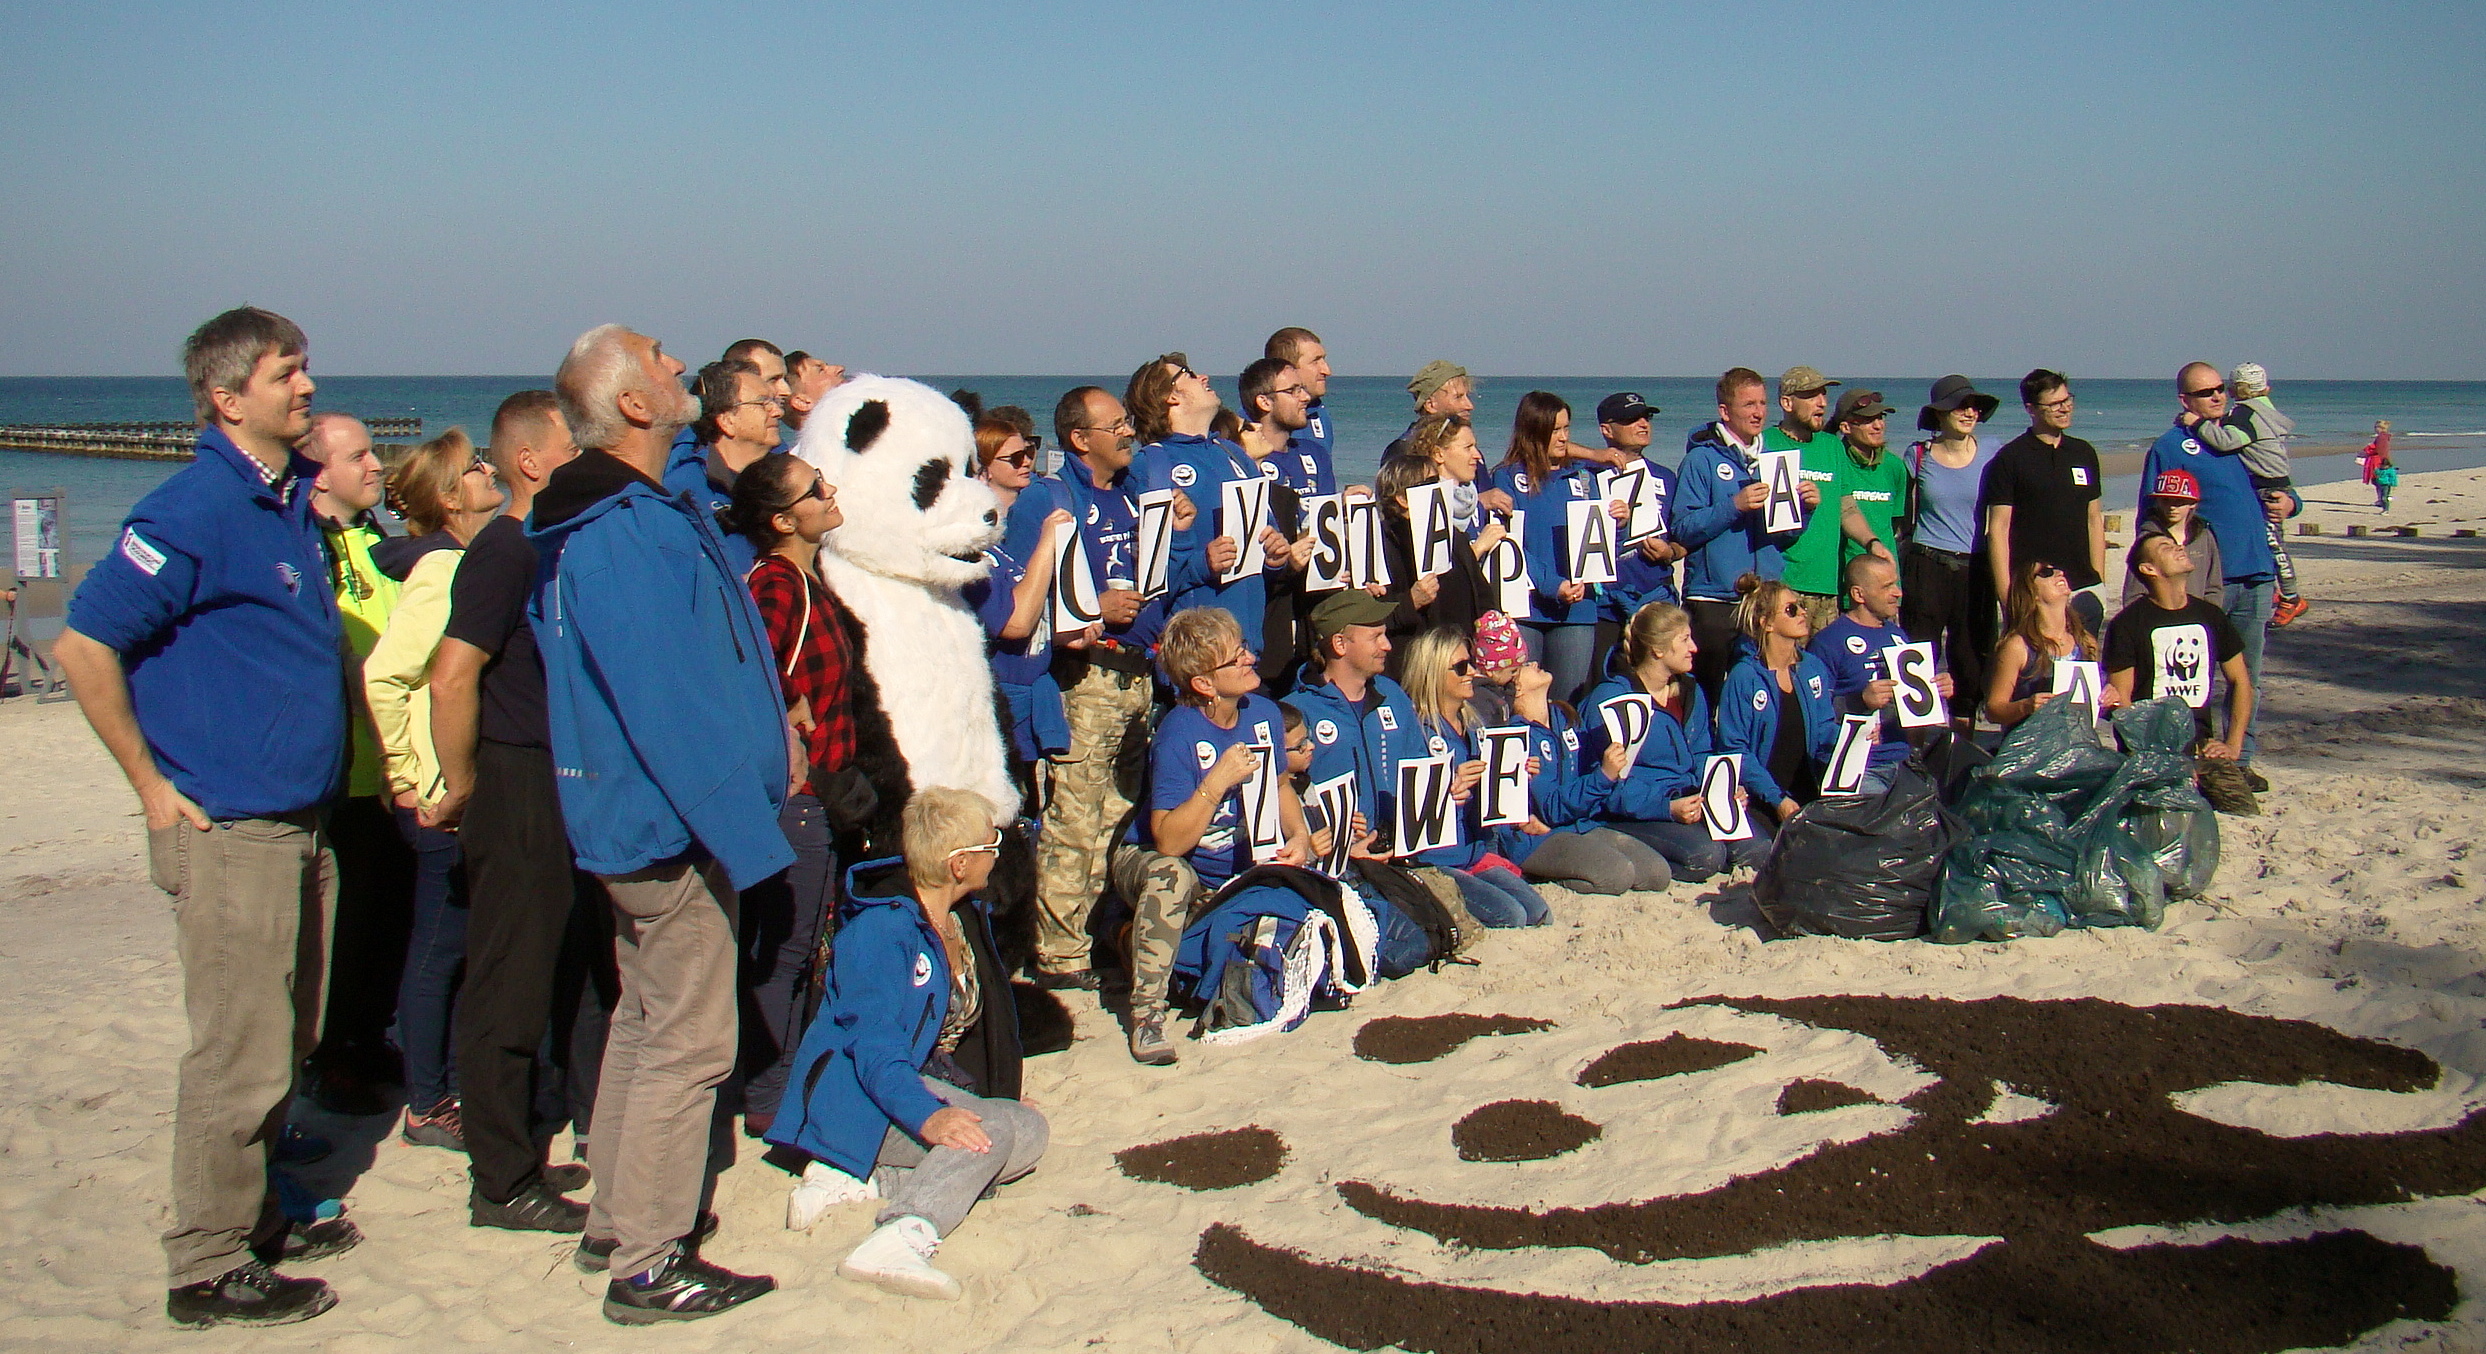 34 - Akcja "Czyste plaże" WWF Polska. Jest coraz lepiej! (+zdjęcia)